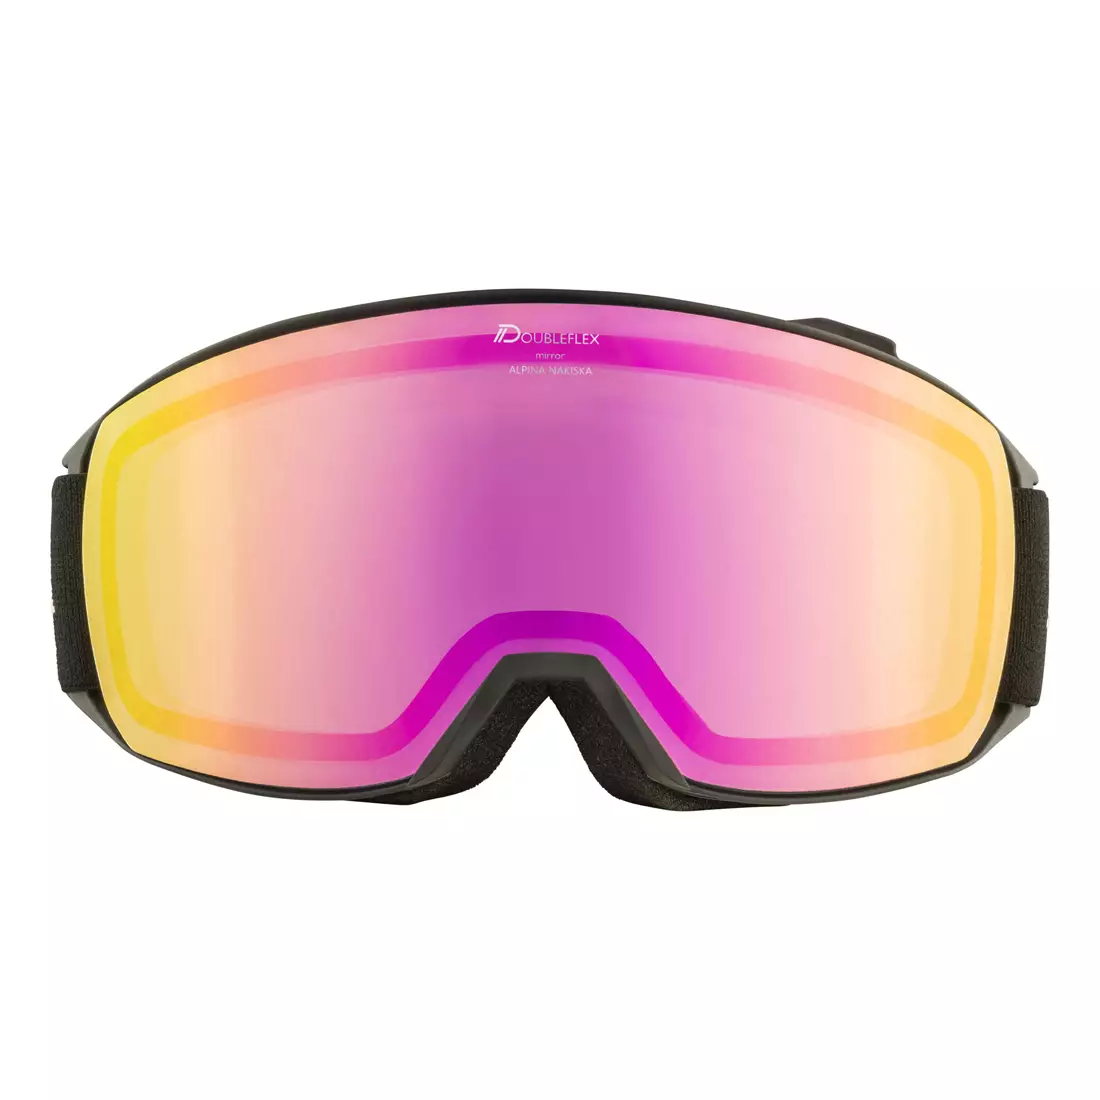 ALPINA M40 NAKISKA Q-LITE ski-/snowboardbrille, black-rose matt